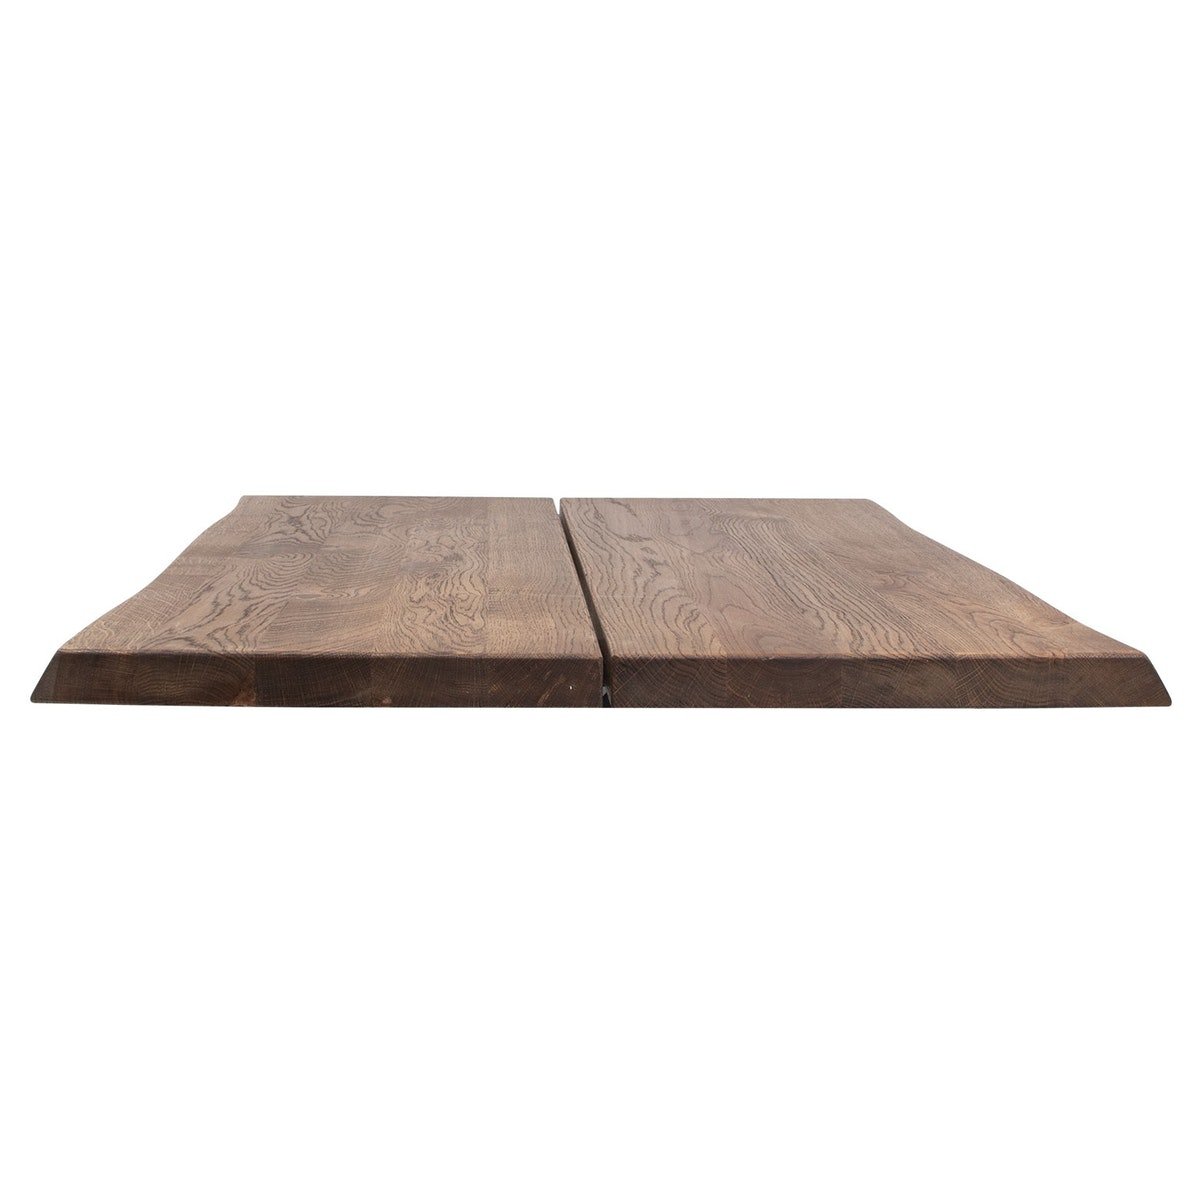 9: Hugin, Bordplade til sofa- eller cafébord, Egetræ by House of Sander (H: 4 cm. B: 80 cm. L: 120 cm., Smoked)